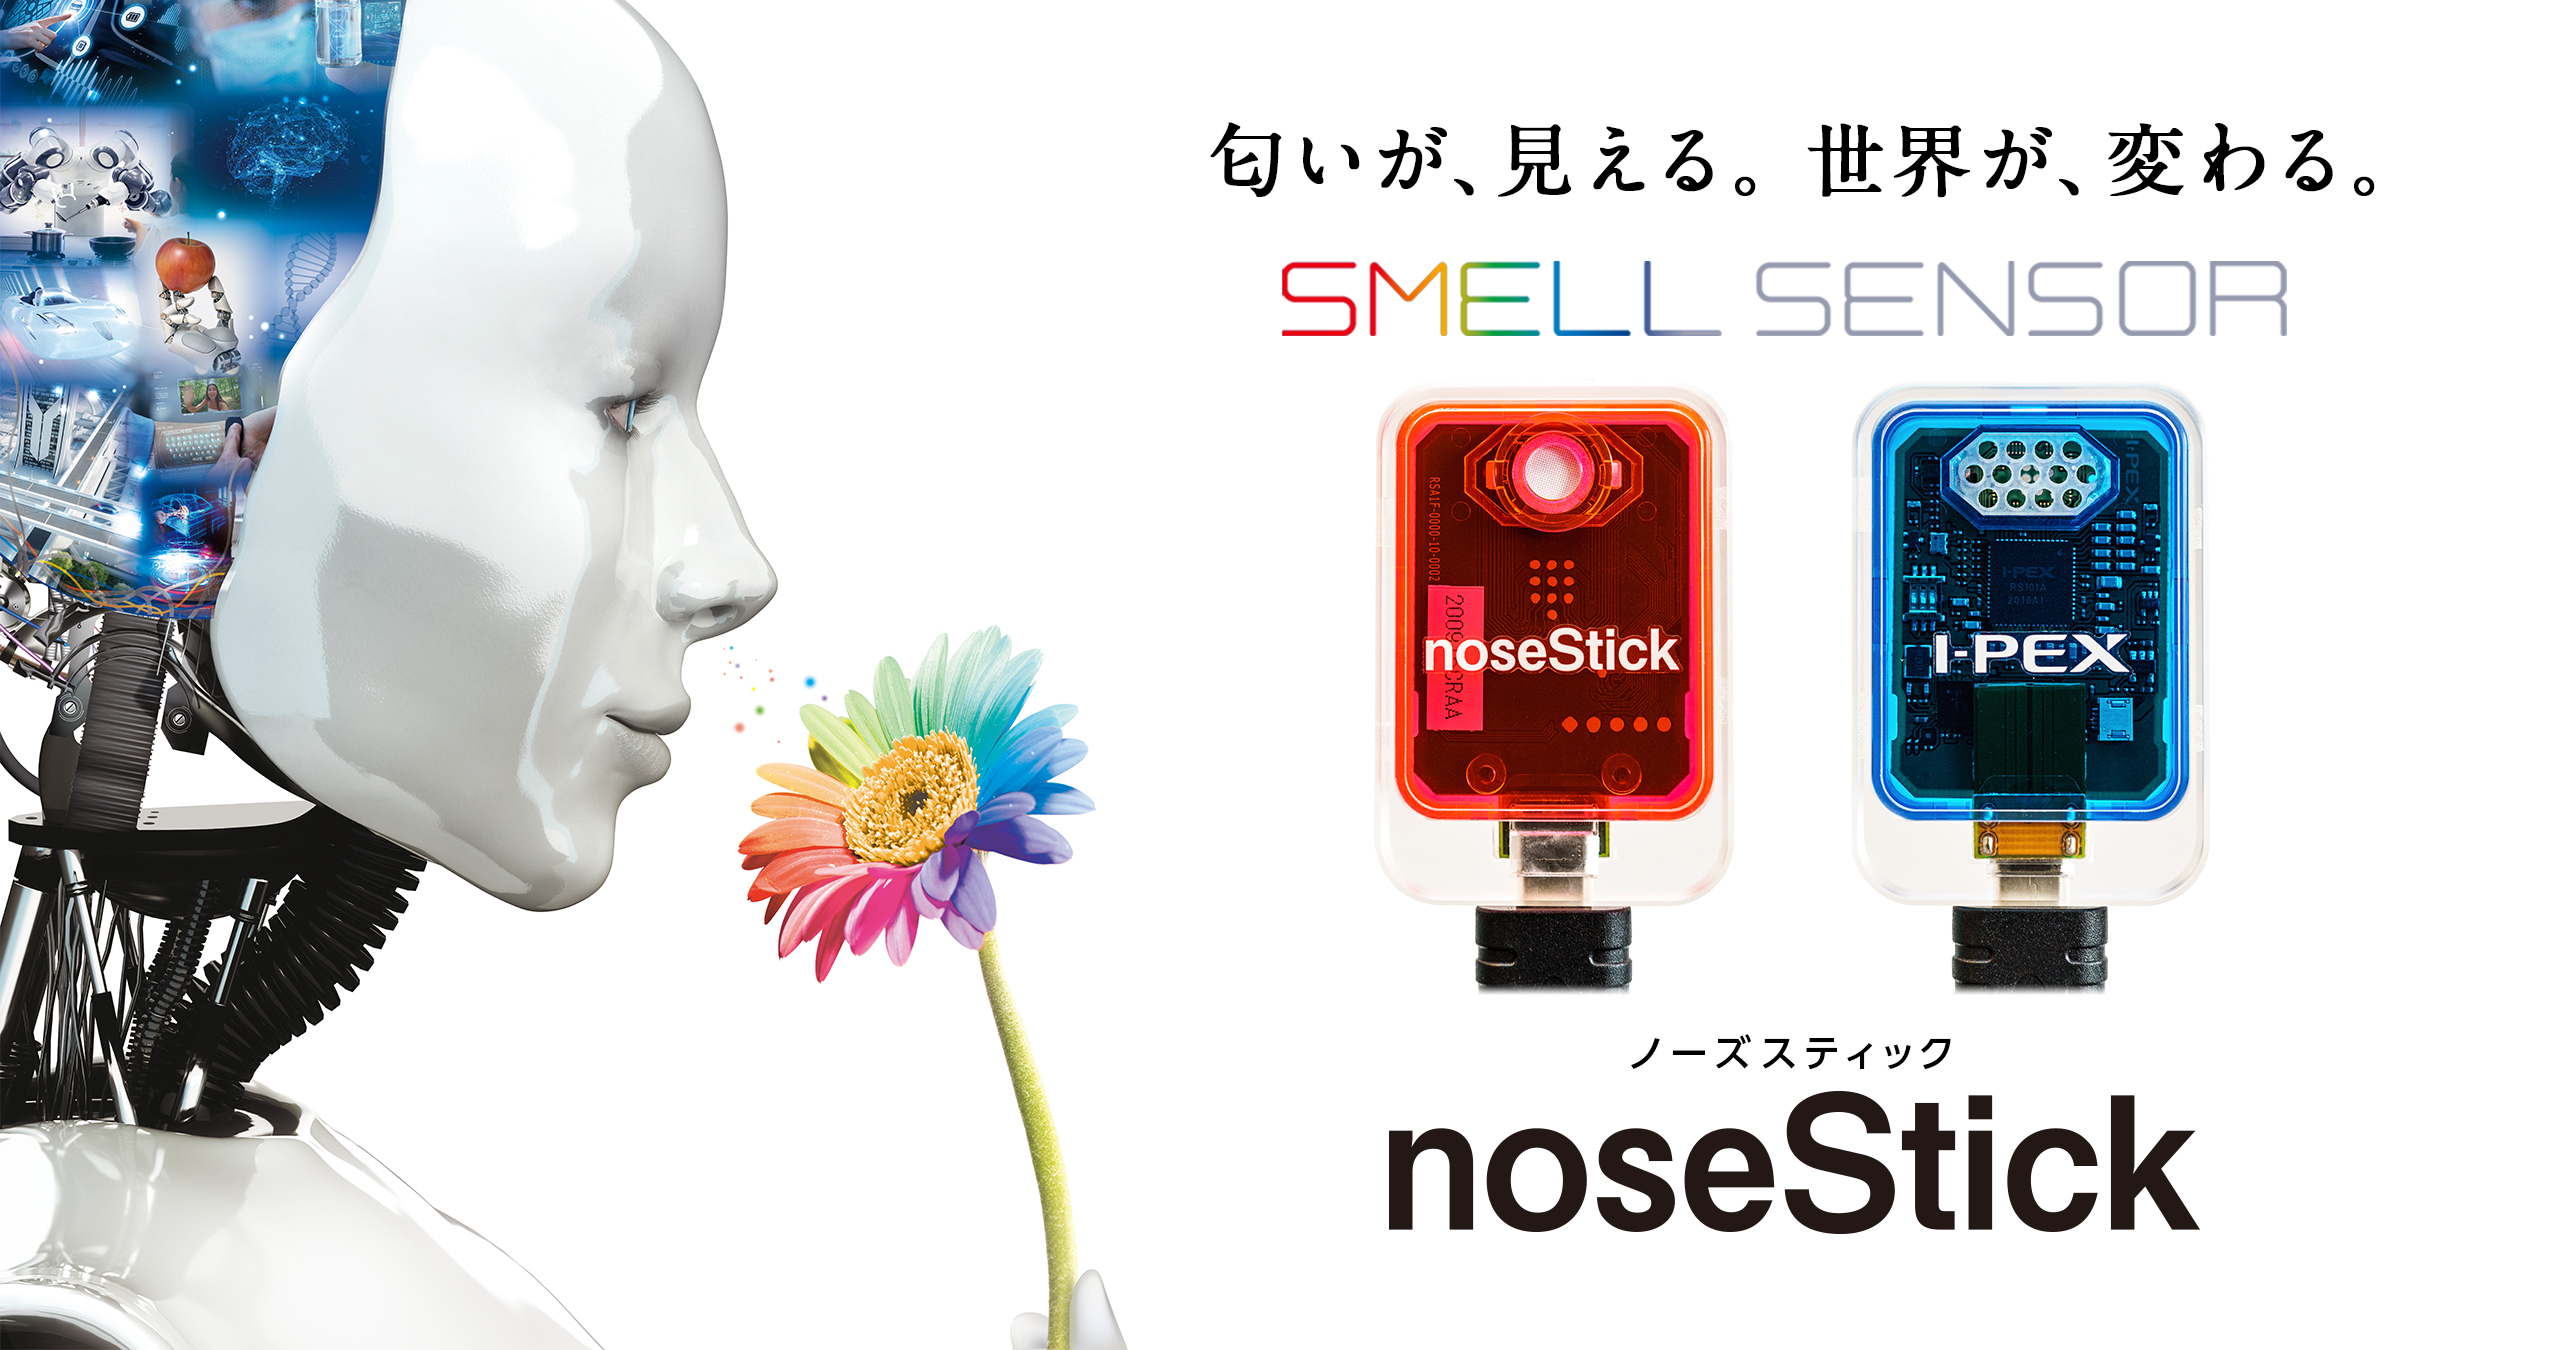 スマホに差して匂いを計測するデバイス Nosestick 福岡市内3拠点で開催するポップアップストアに4 14 出展 I Pex株式会社の プレスリリース